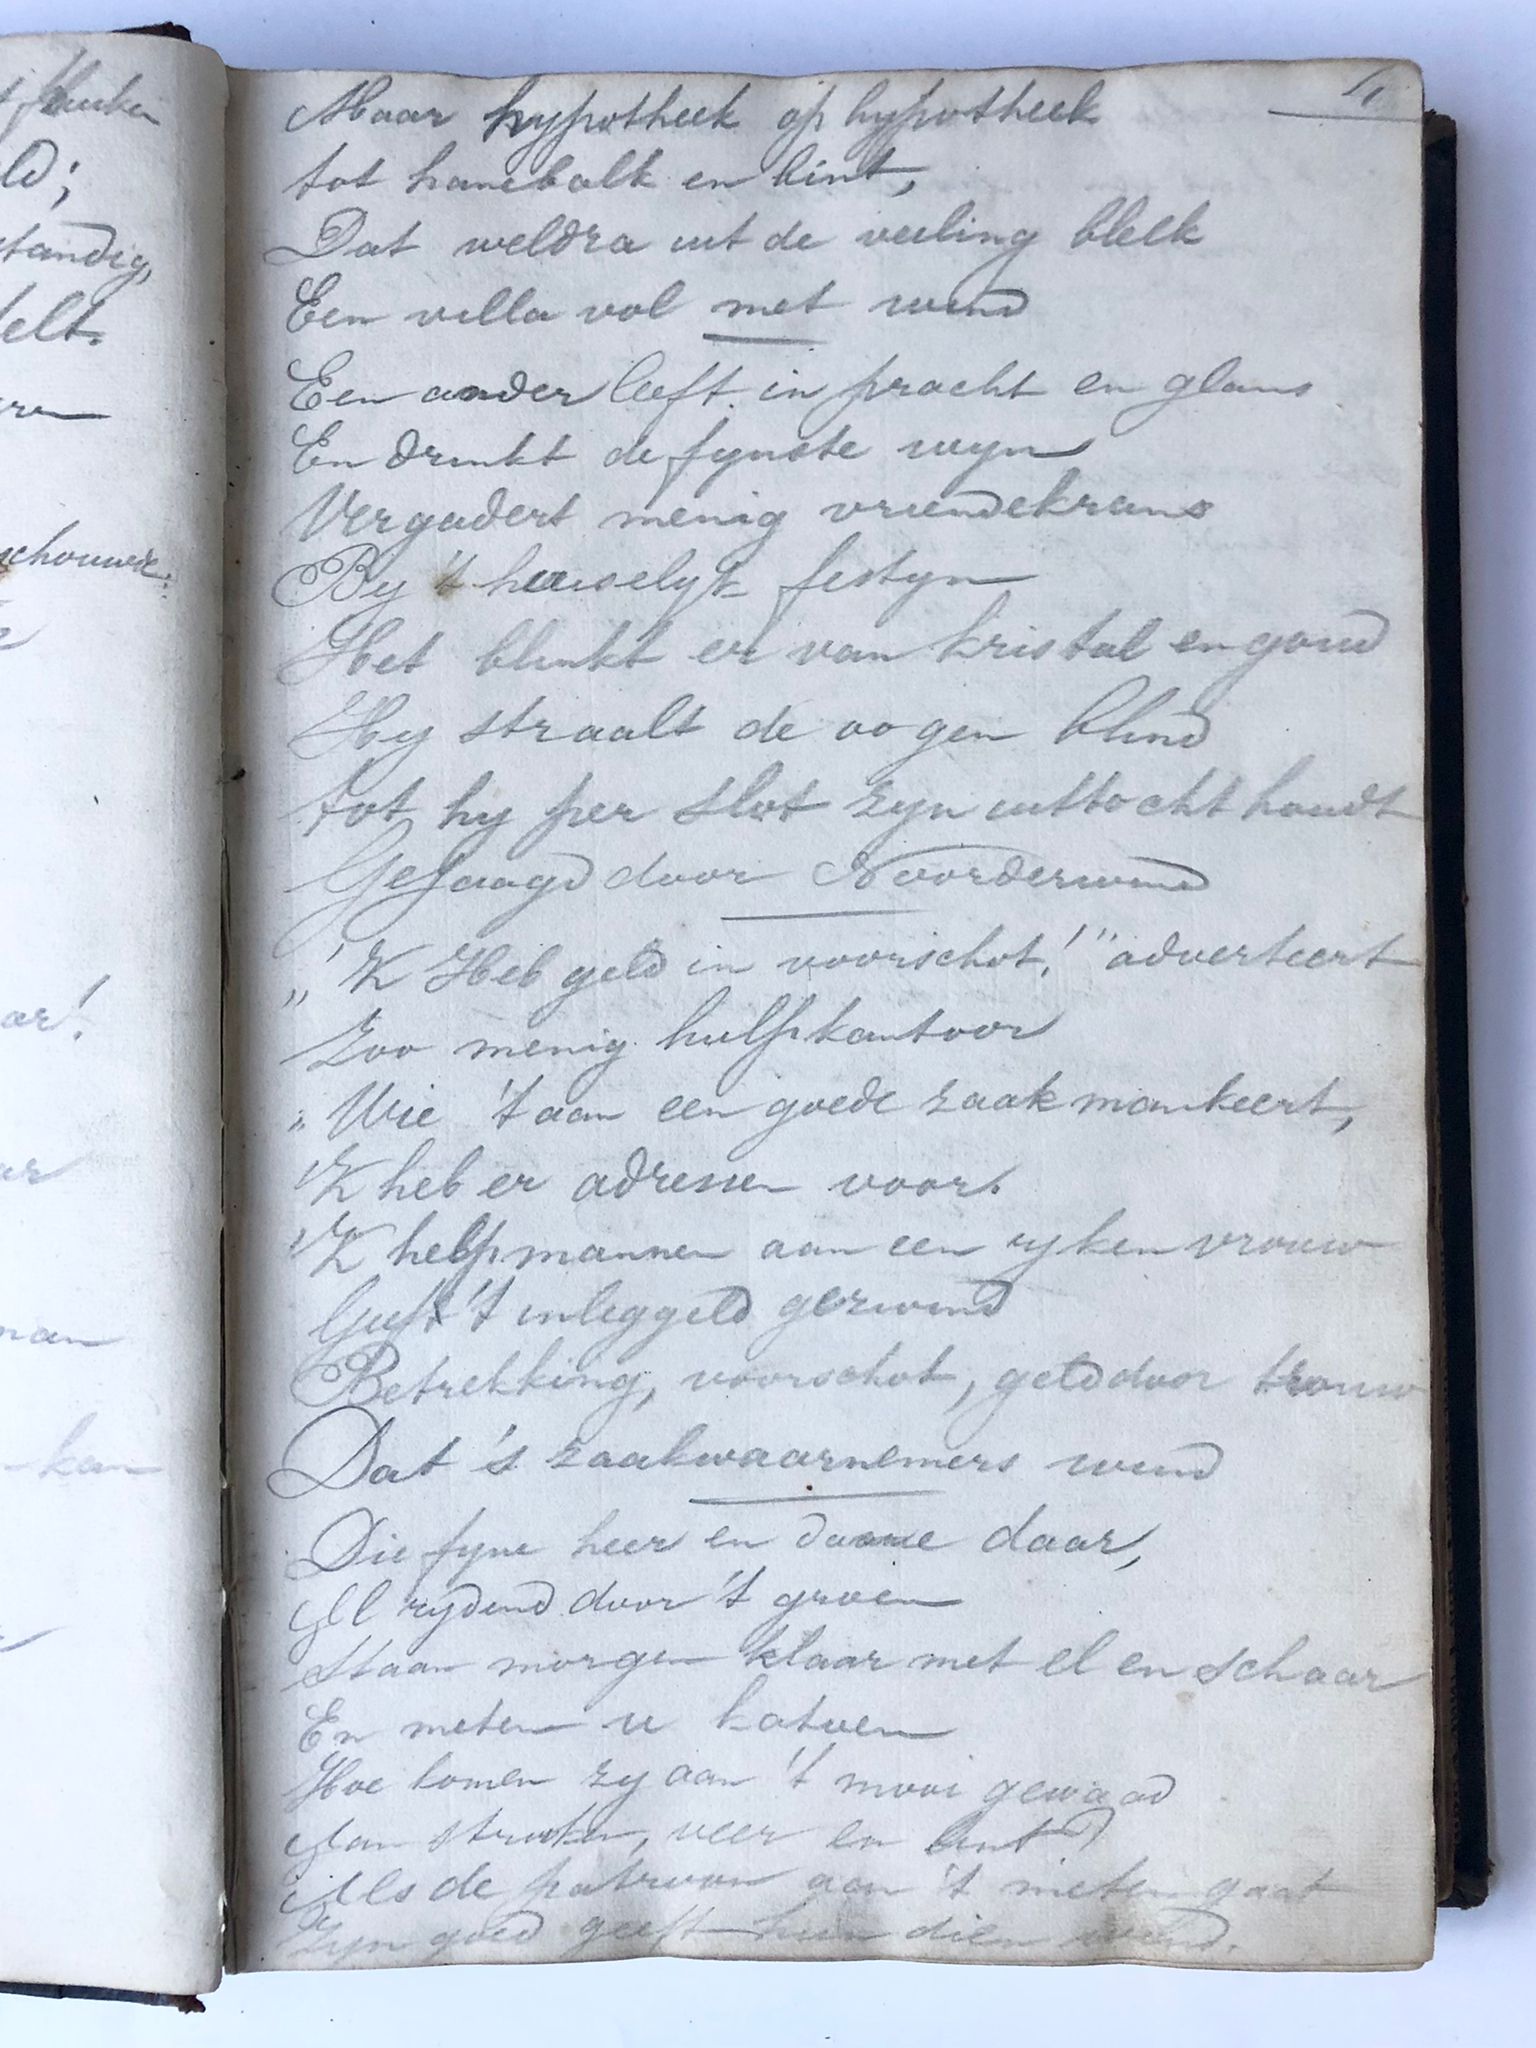  - [Index, 1884] Register, folio, met verzen in handschrift, van de hand van J.N. van der Weiden, Zijlstraat 42 te Haarlem, ingeschreven in de jaren 1880-1884. Ca. 150 beschreven pagina's.